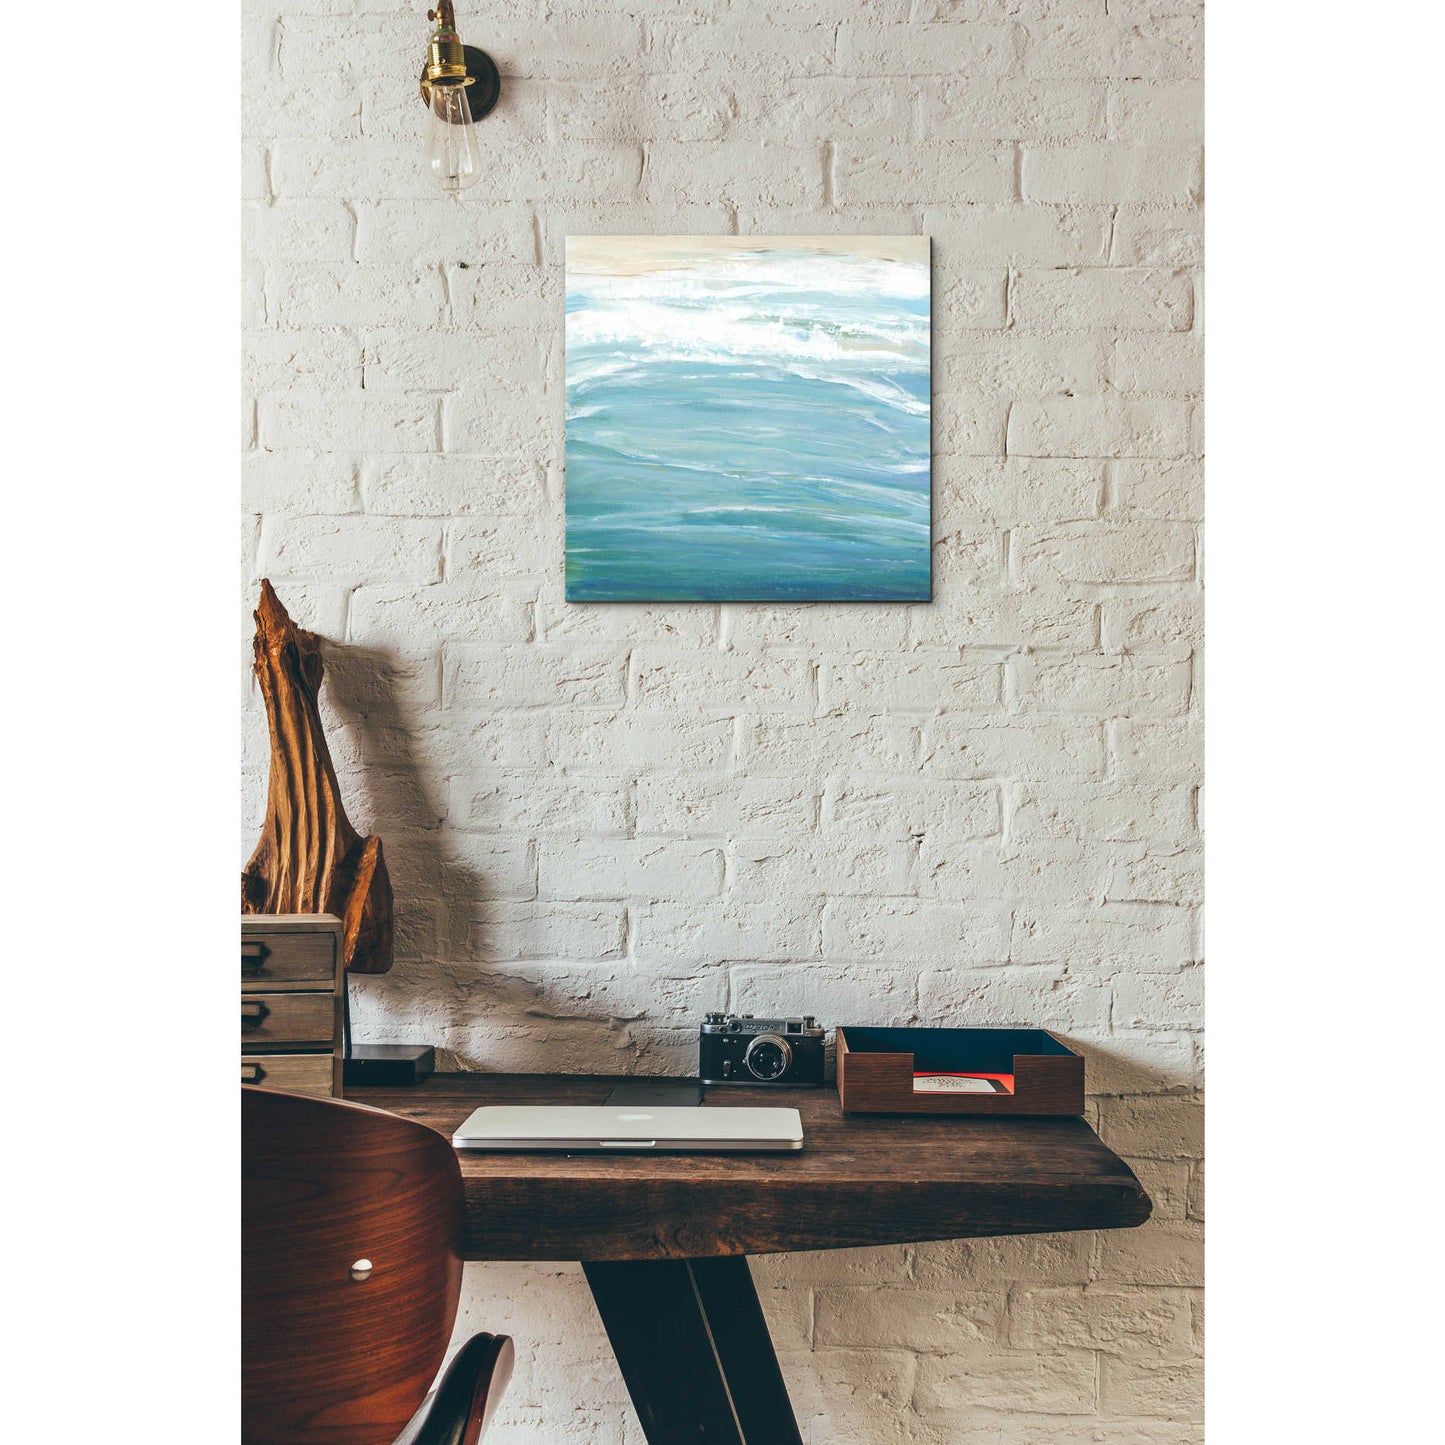 Epic Art 'Sea Breeze Coast II' by Tim O'Toole, Acrylic Glass Wall Art,12x12